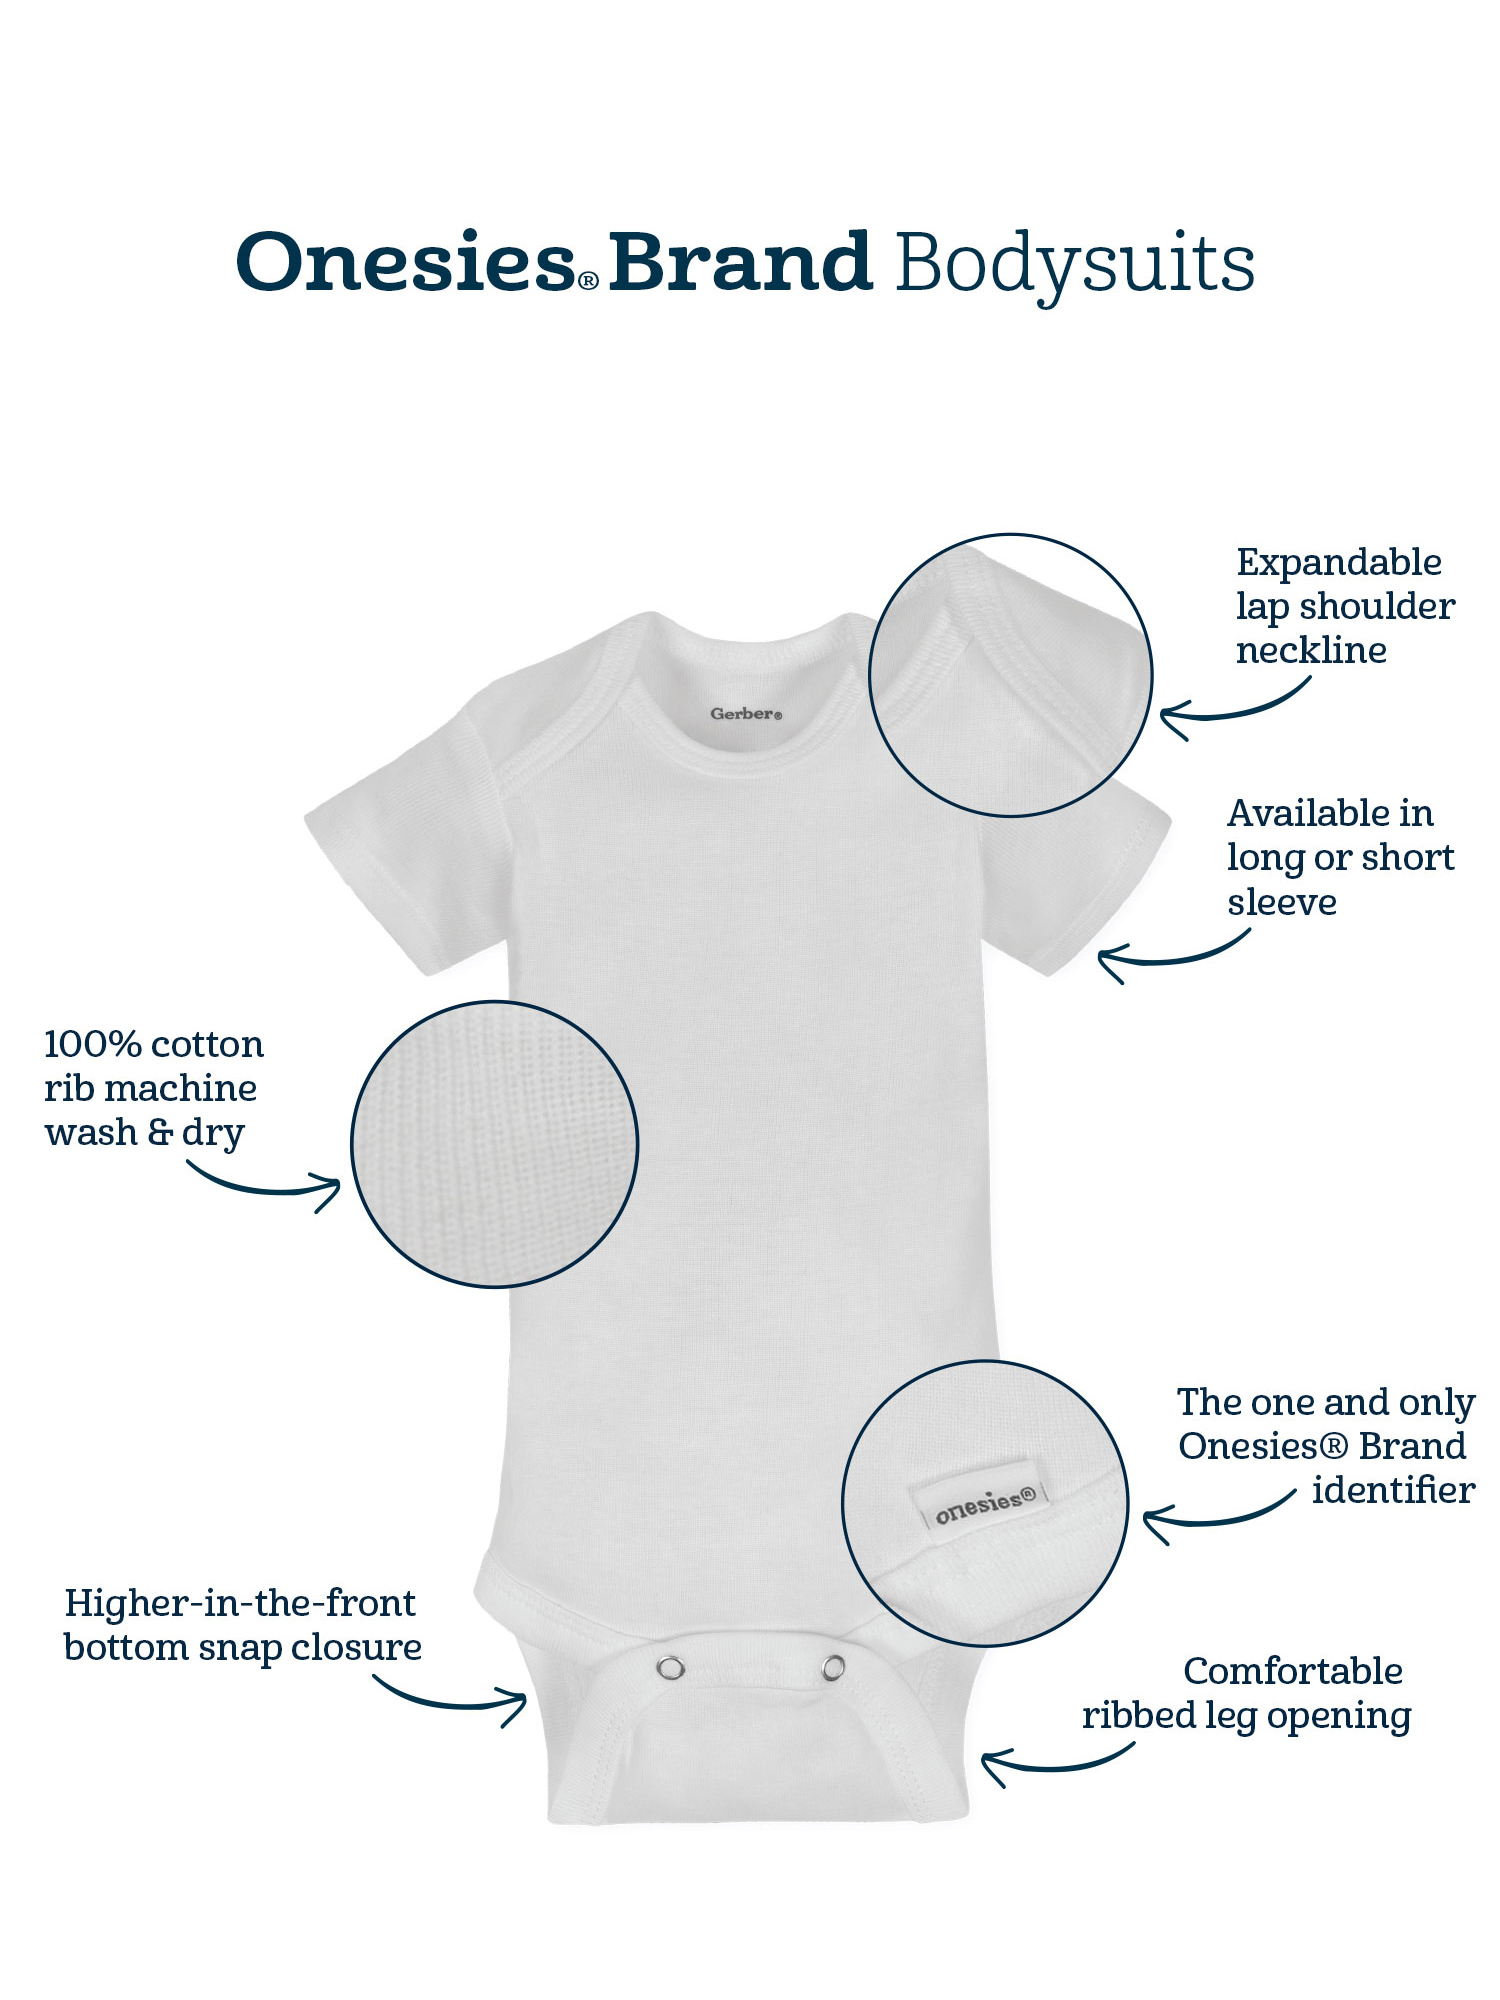 Onesies Brand Baby Boy or Girl Gender Neutral Short Sleeve Onesies Bodysuits, 8-Pack, Sizes Newborn-12M - image 4 of 17